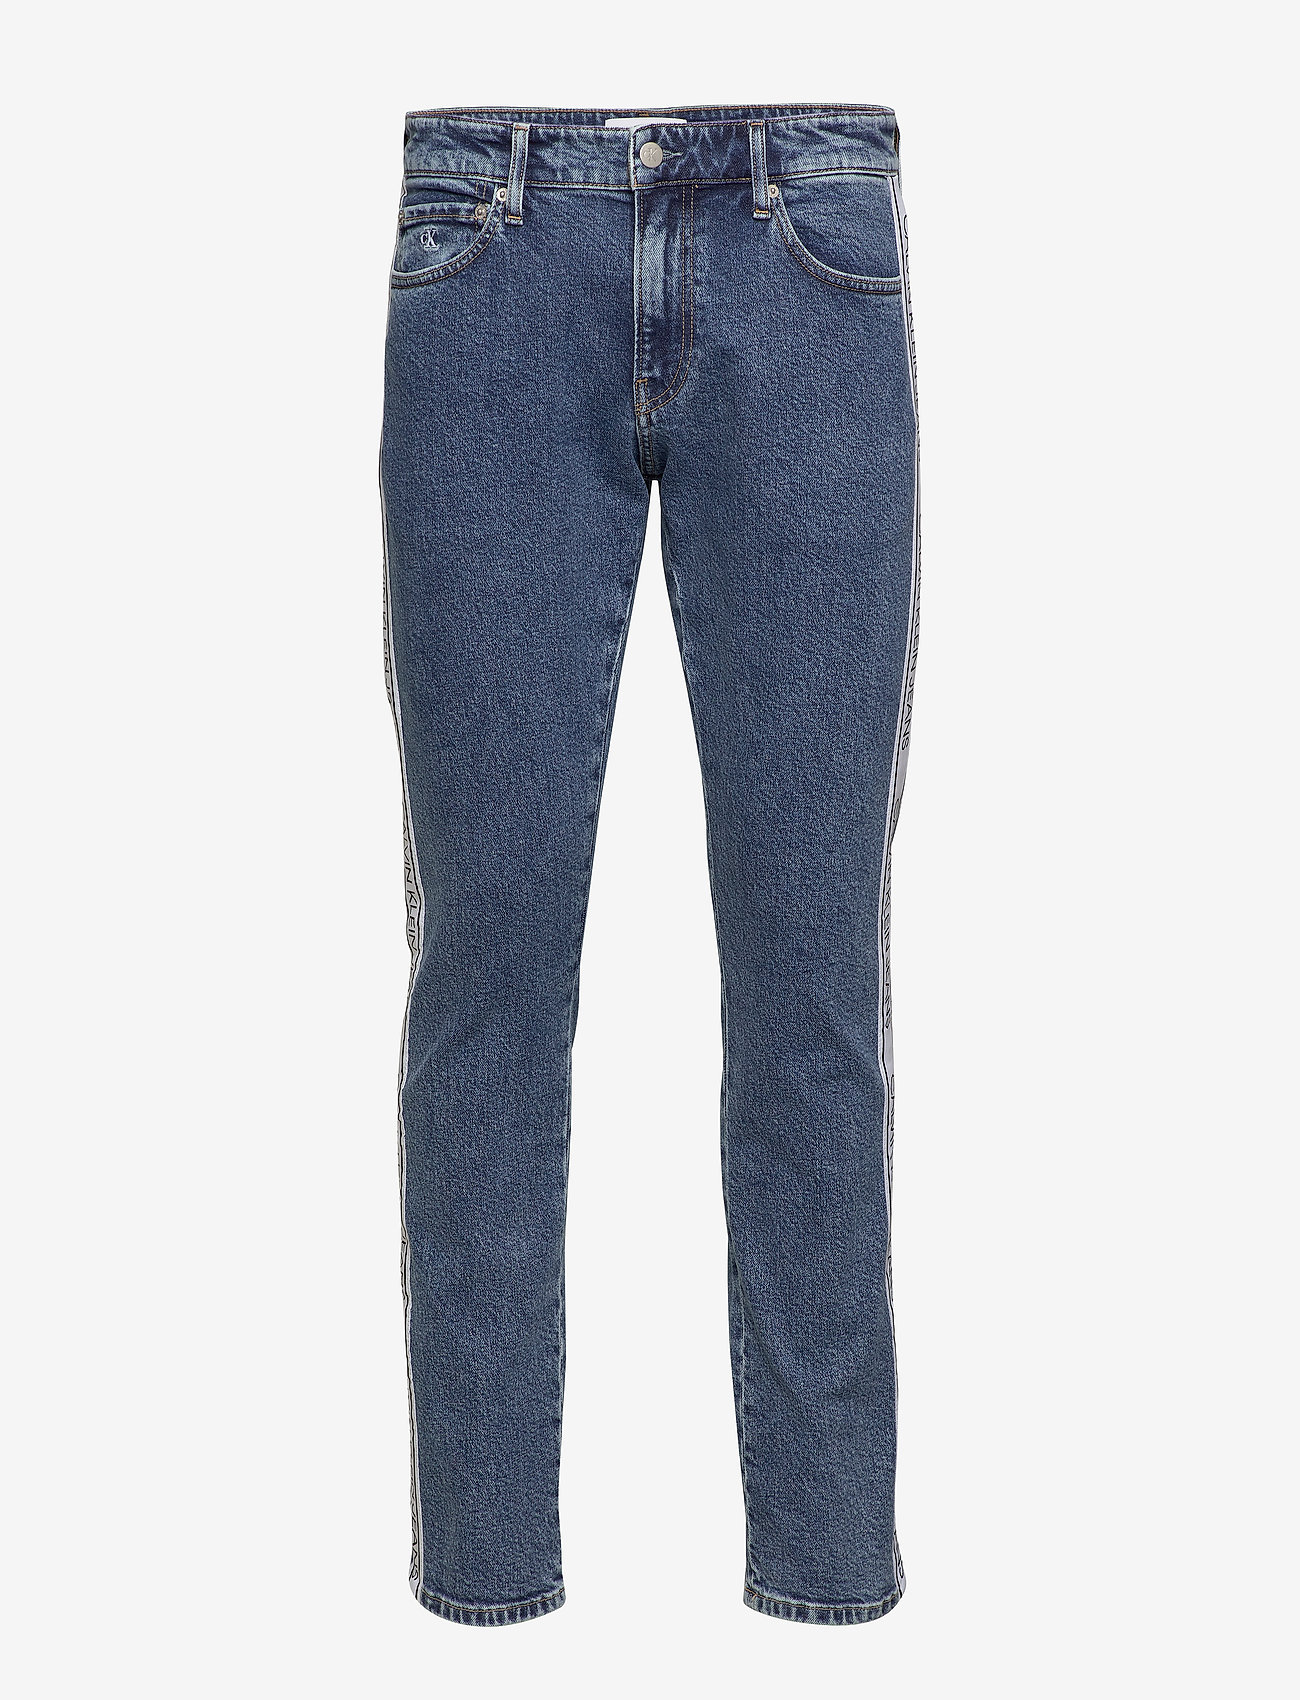 calvin klein jeans 026 slim